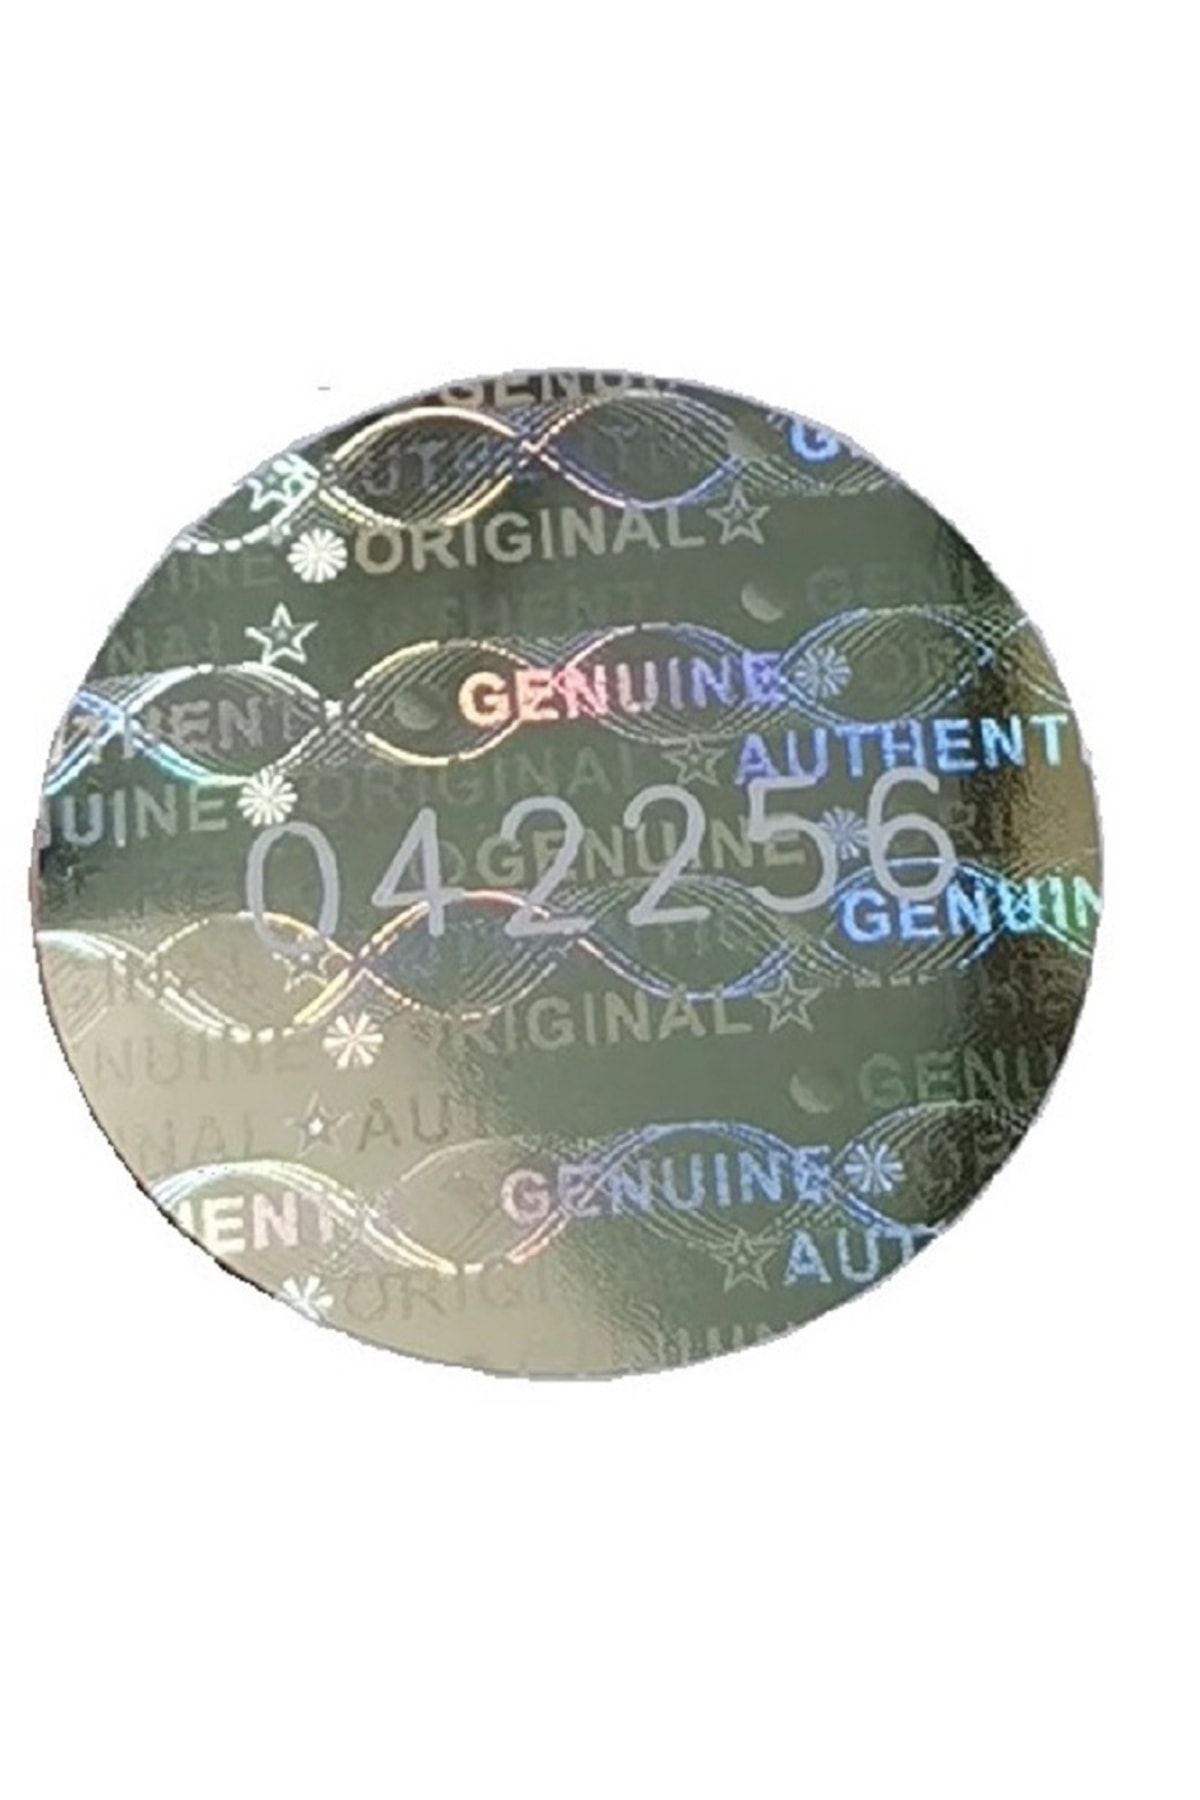 OEM Hologramlı Garanti Etiketi Seri Numaralı 2 Cm 49 Adet